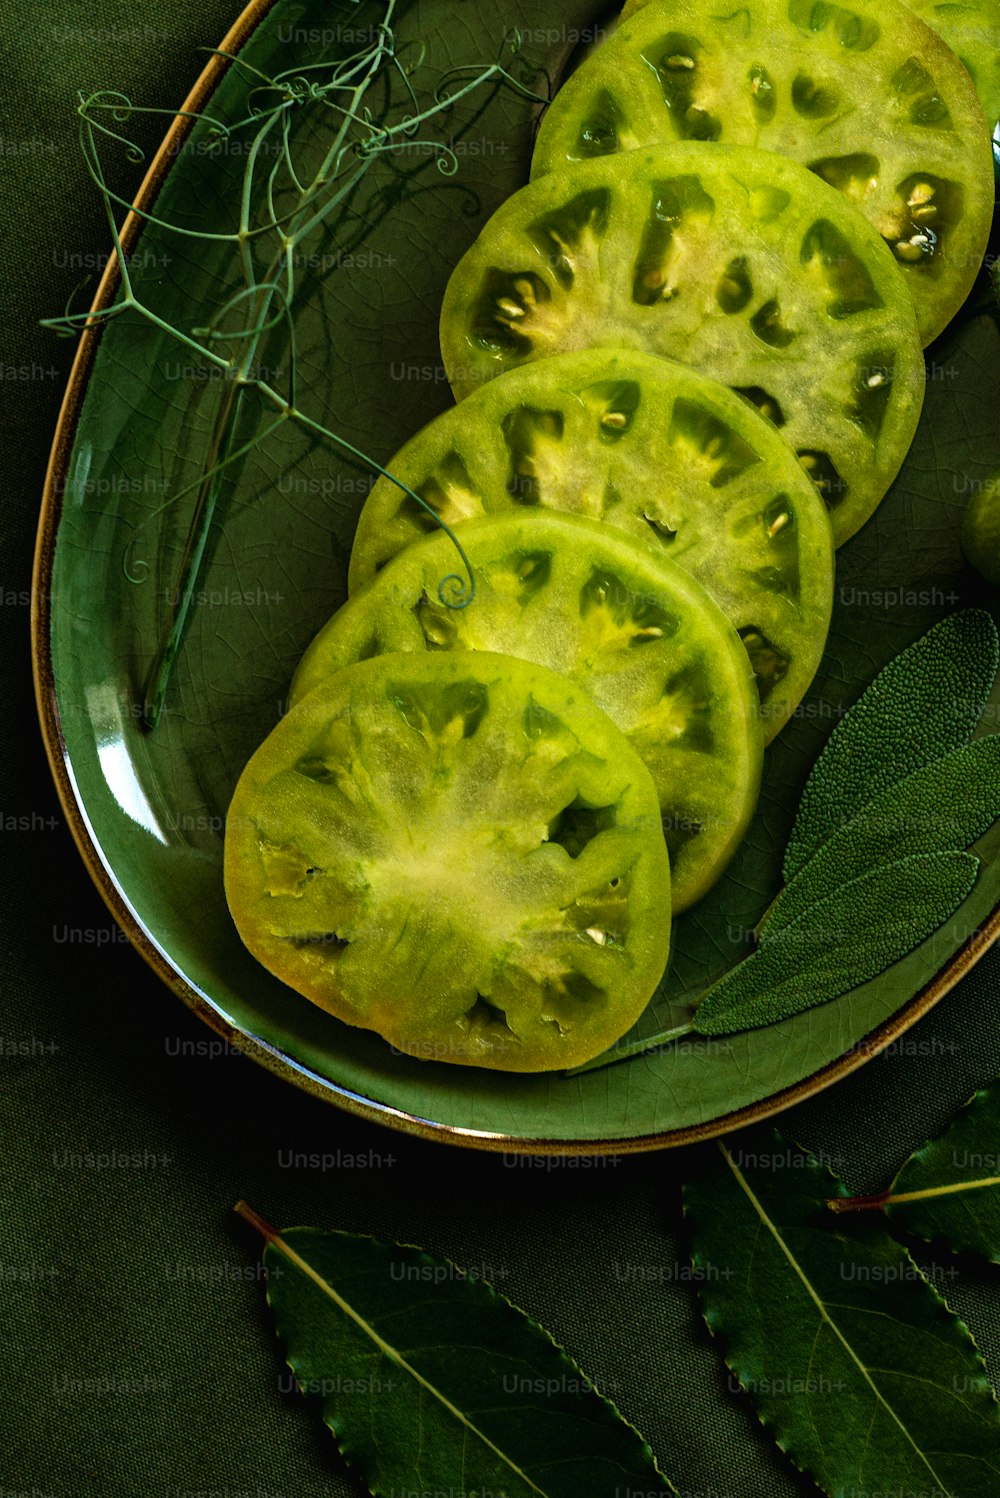 un piatto di pomodori verdi a fette con foglie